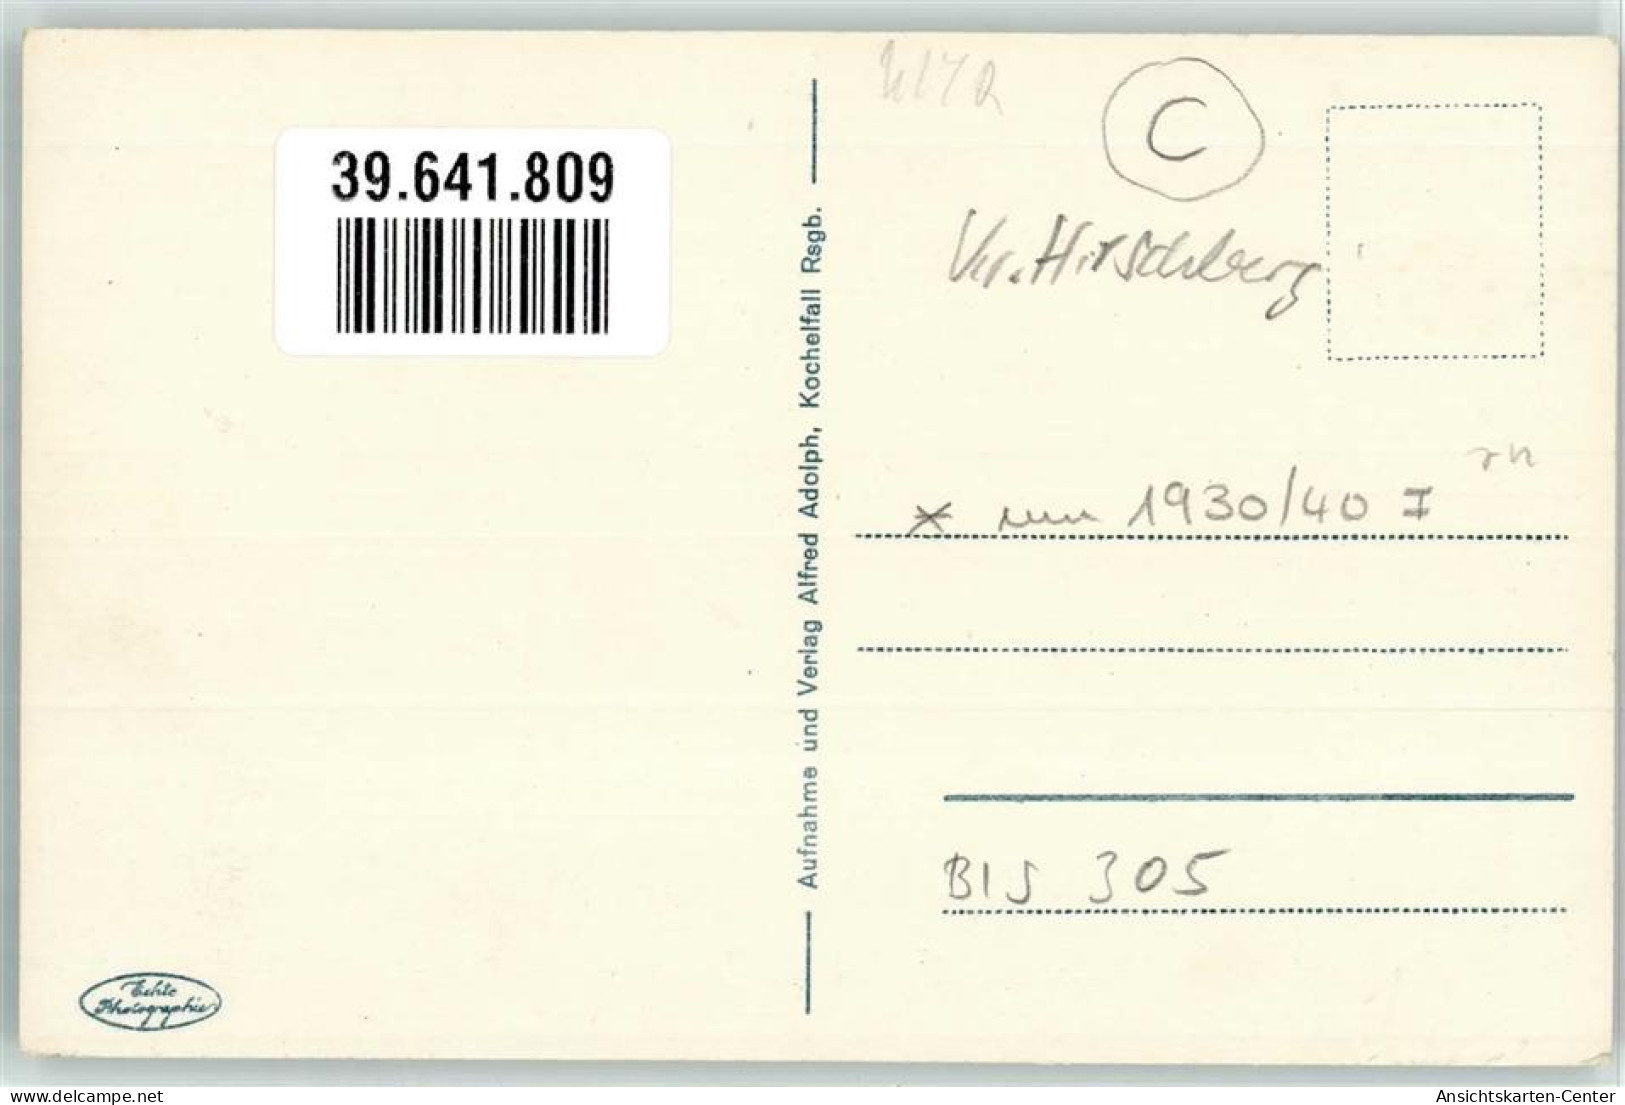 39641809 - Schreiberhau Szklarska Poreba - Poland